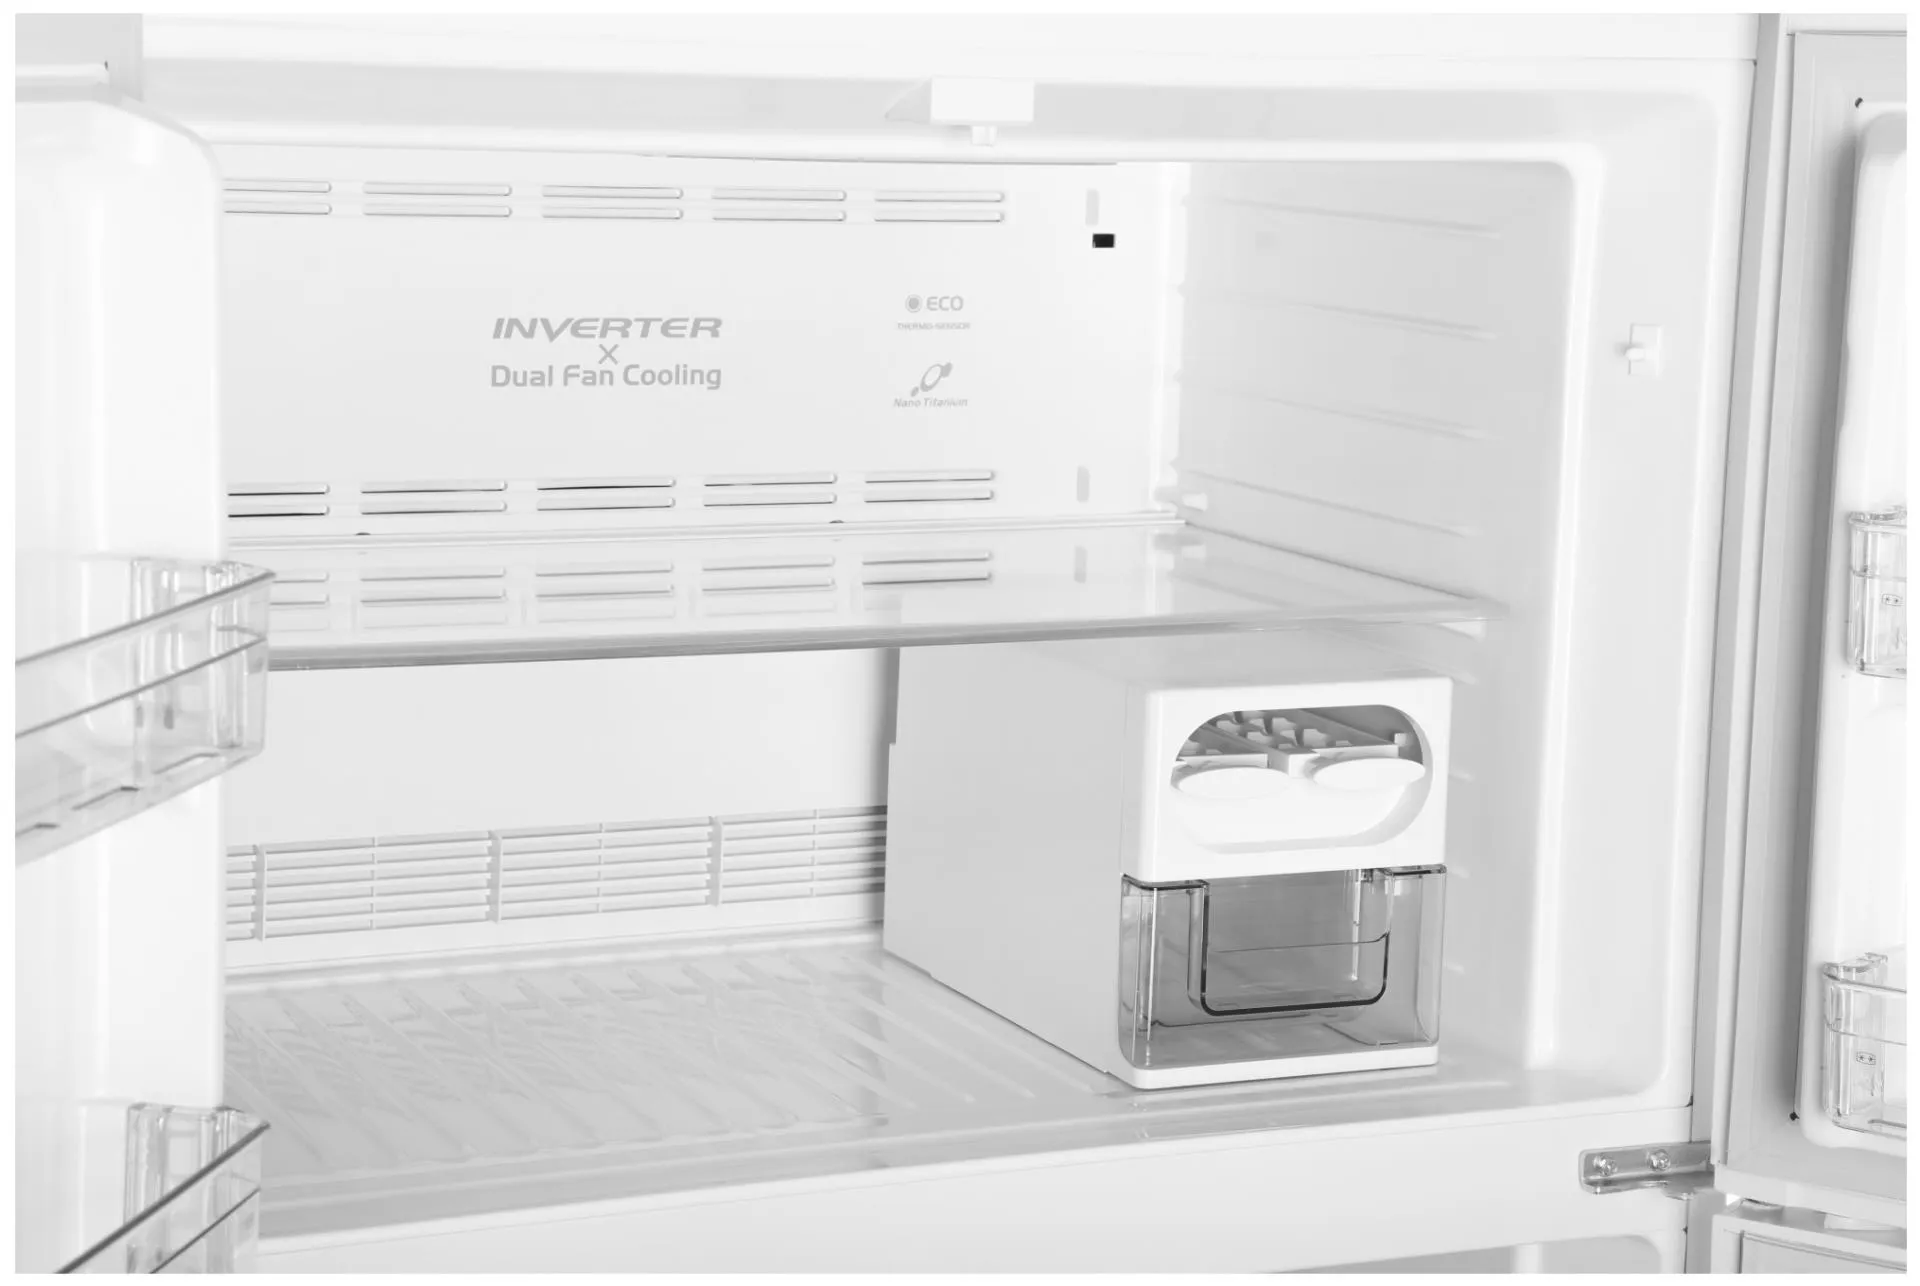 холодильник HITACHI R-W 660 PUC7 GPW белый